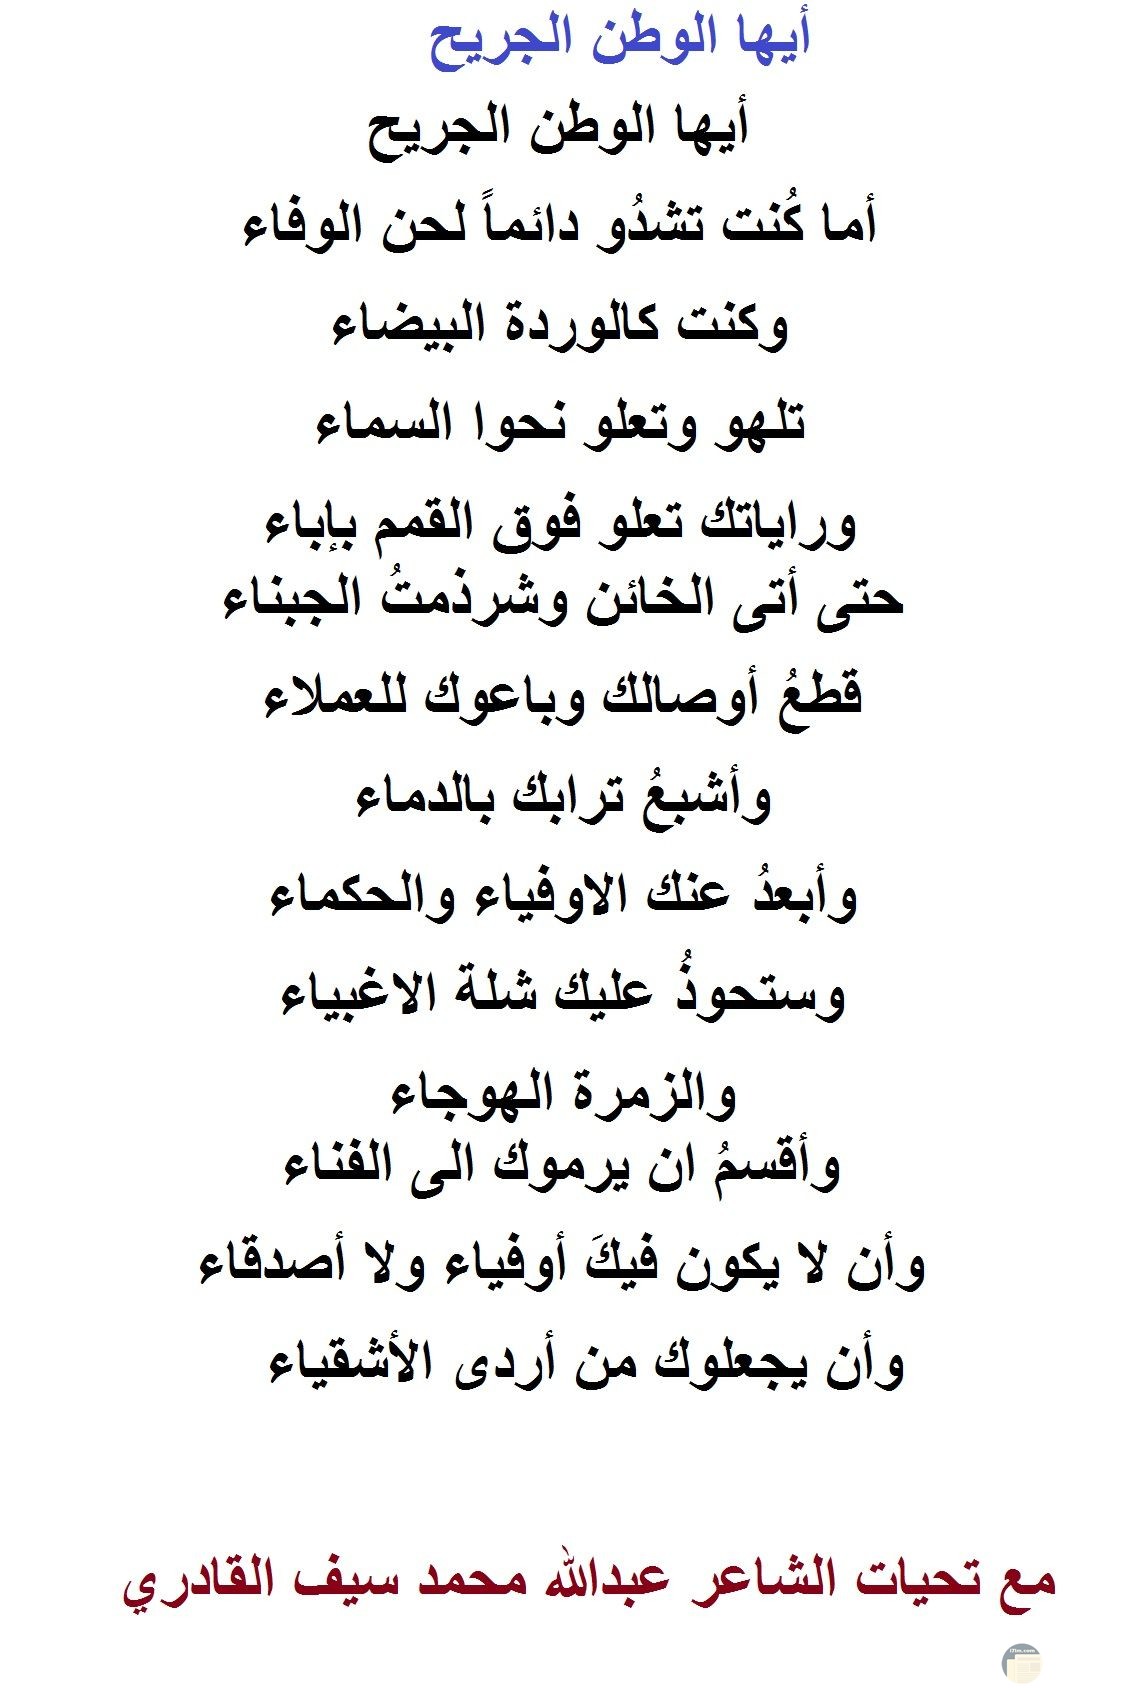 الشاعر عبد الله محمد سيف القادري - شعر أيها الوطن الجريح.